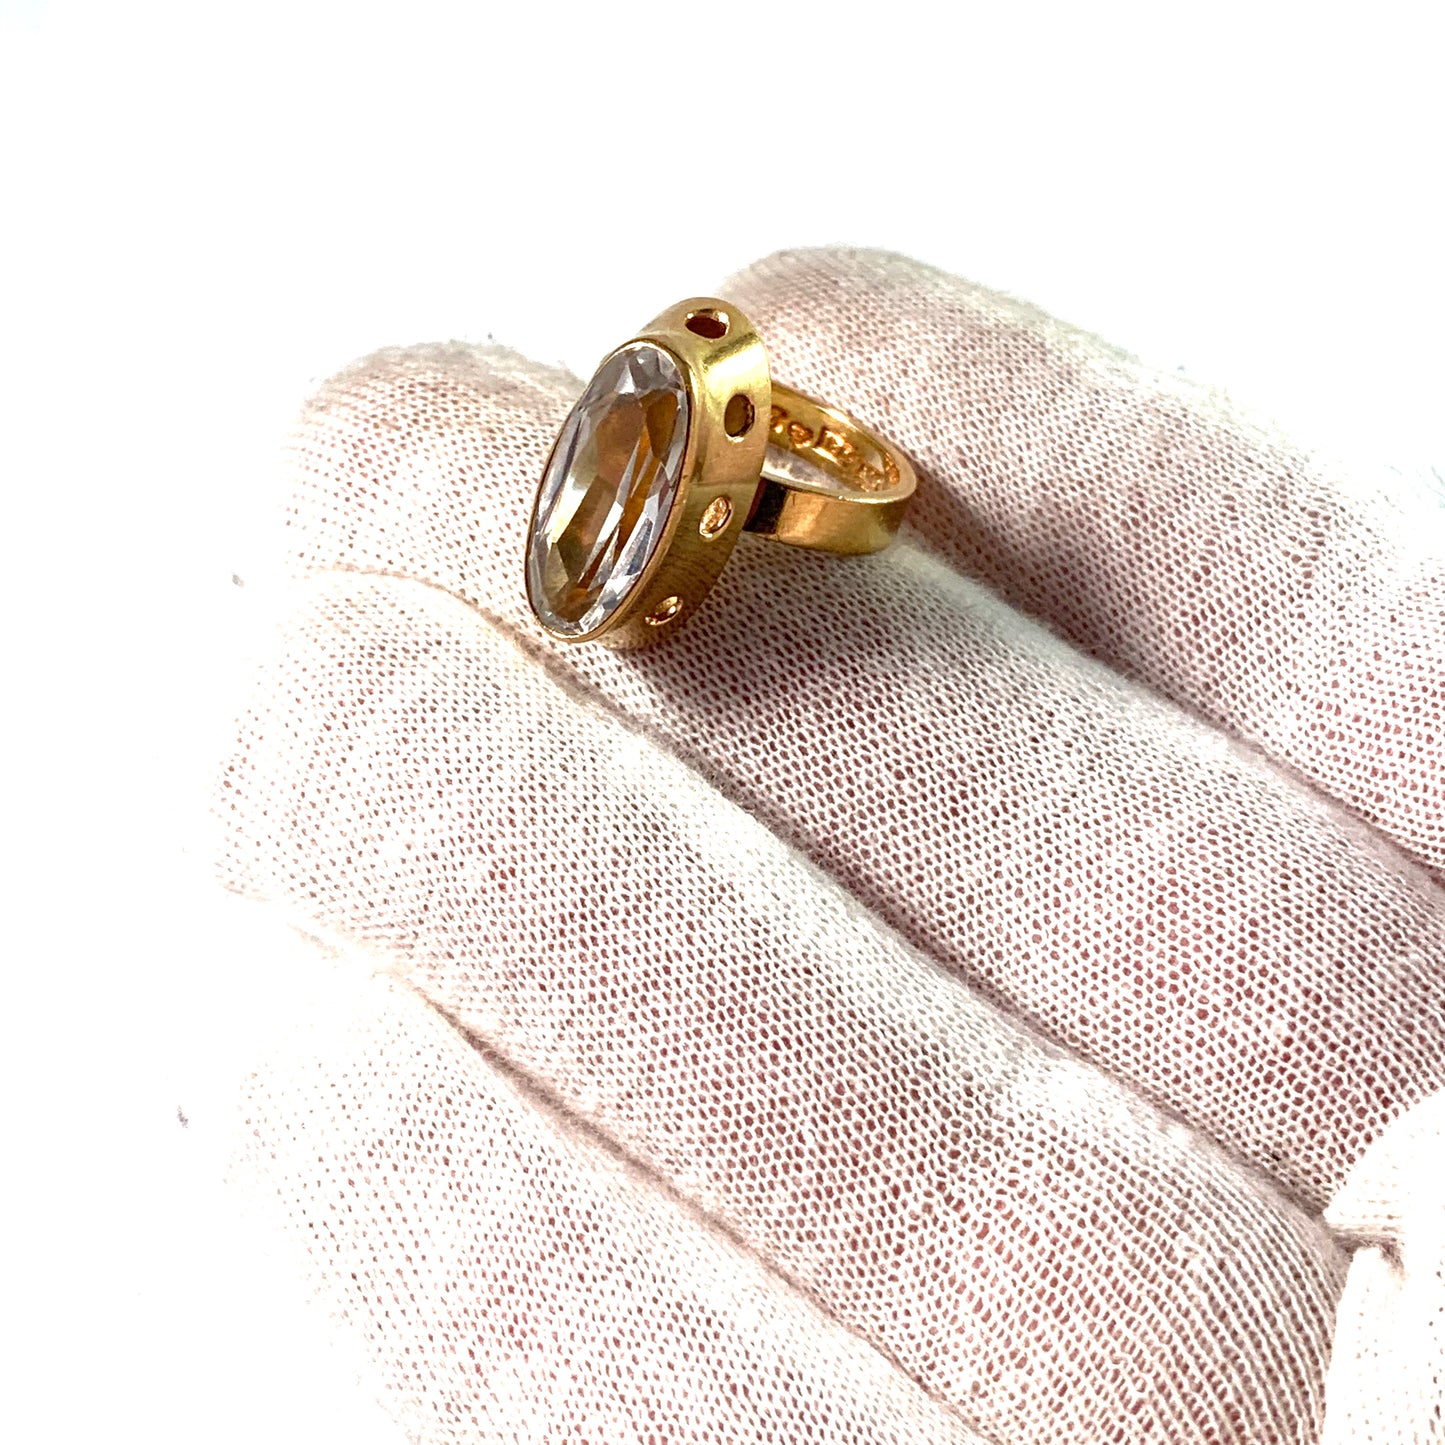 R Eriksson, Sweden 1975 Modernist 18k Gold Rock Crystal Ring.